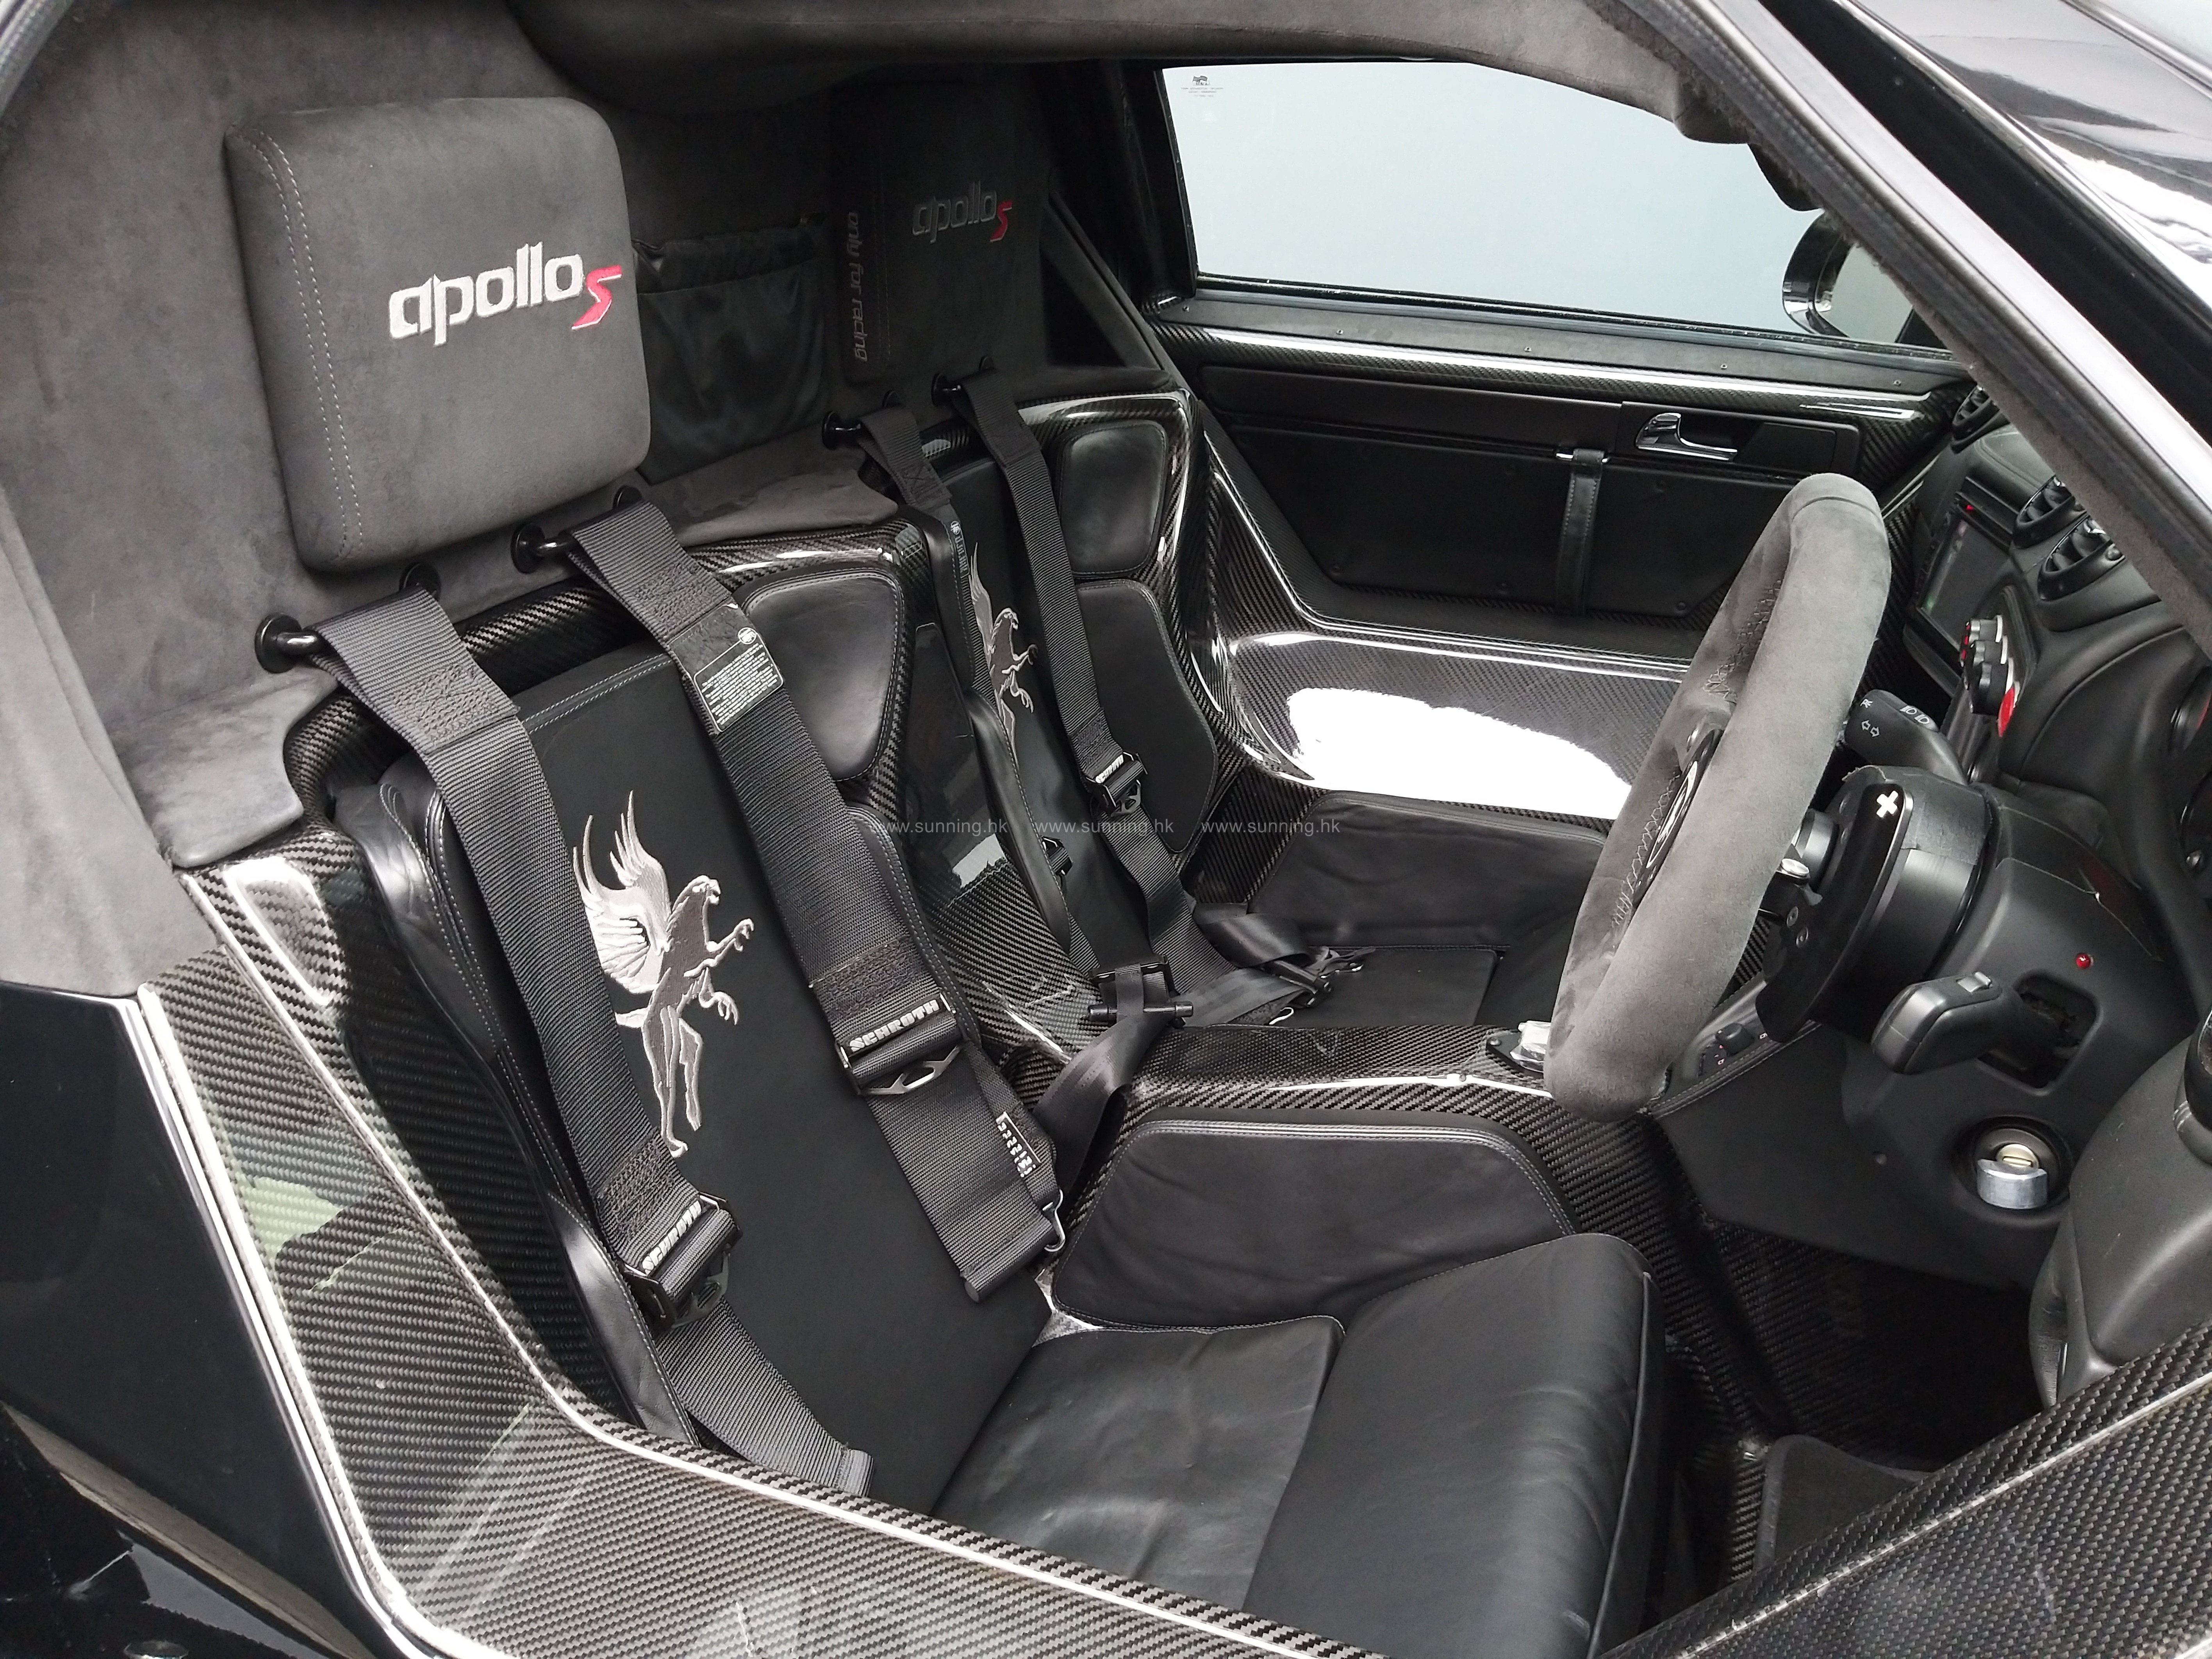 Gumpert Apollo interior - Seats